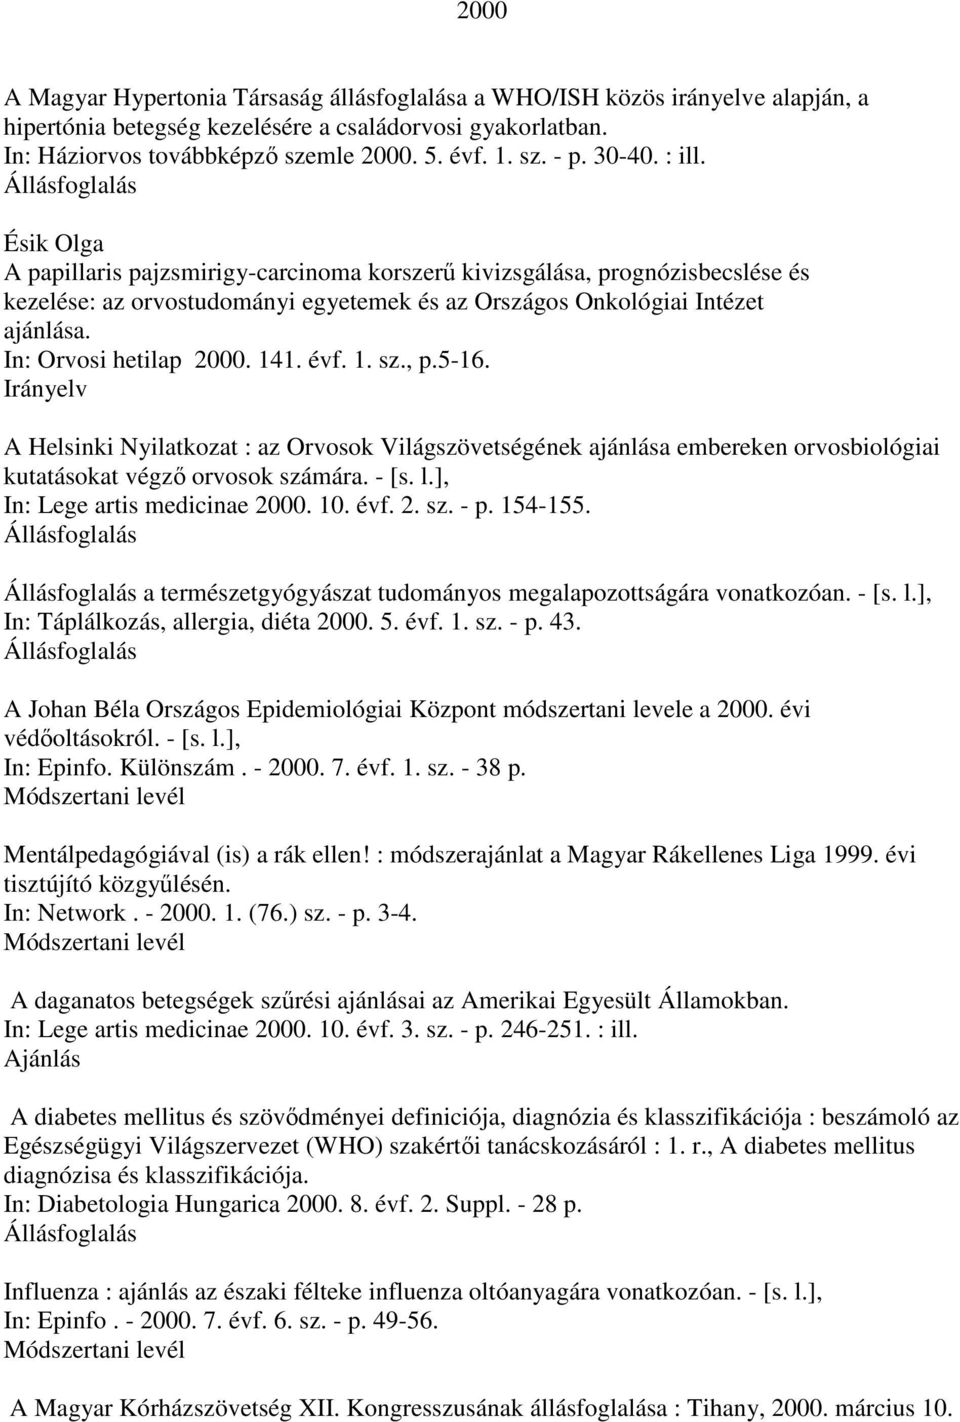 In: Orvosi hetilap 2000. 141. évf. 1. sz., p.5-16. A Helsinki Nyilatkozat : az Orvosok Világszövetségének ajánlása embereken orvosbiológiai kutatásokat végzı orvosok számára. - [s. l.